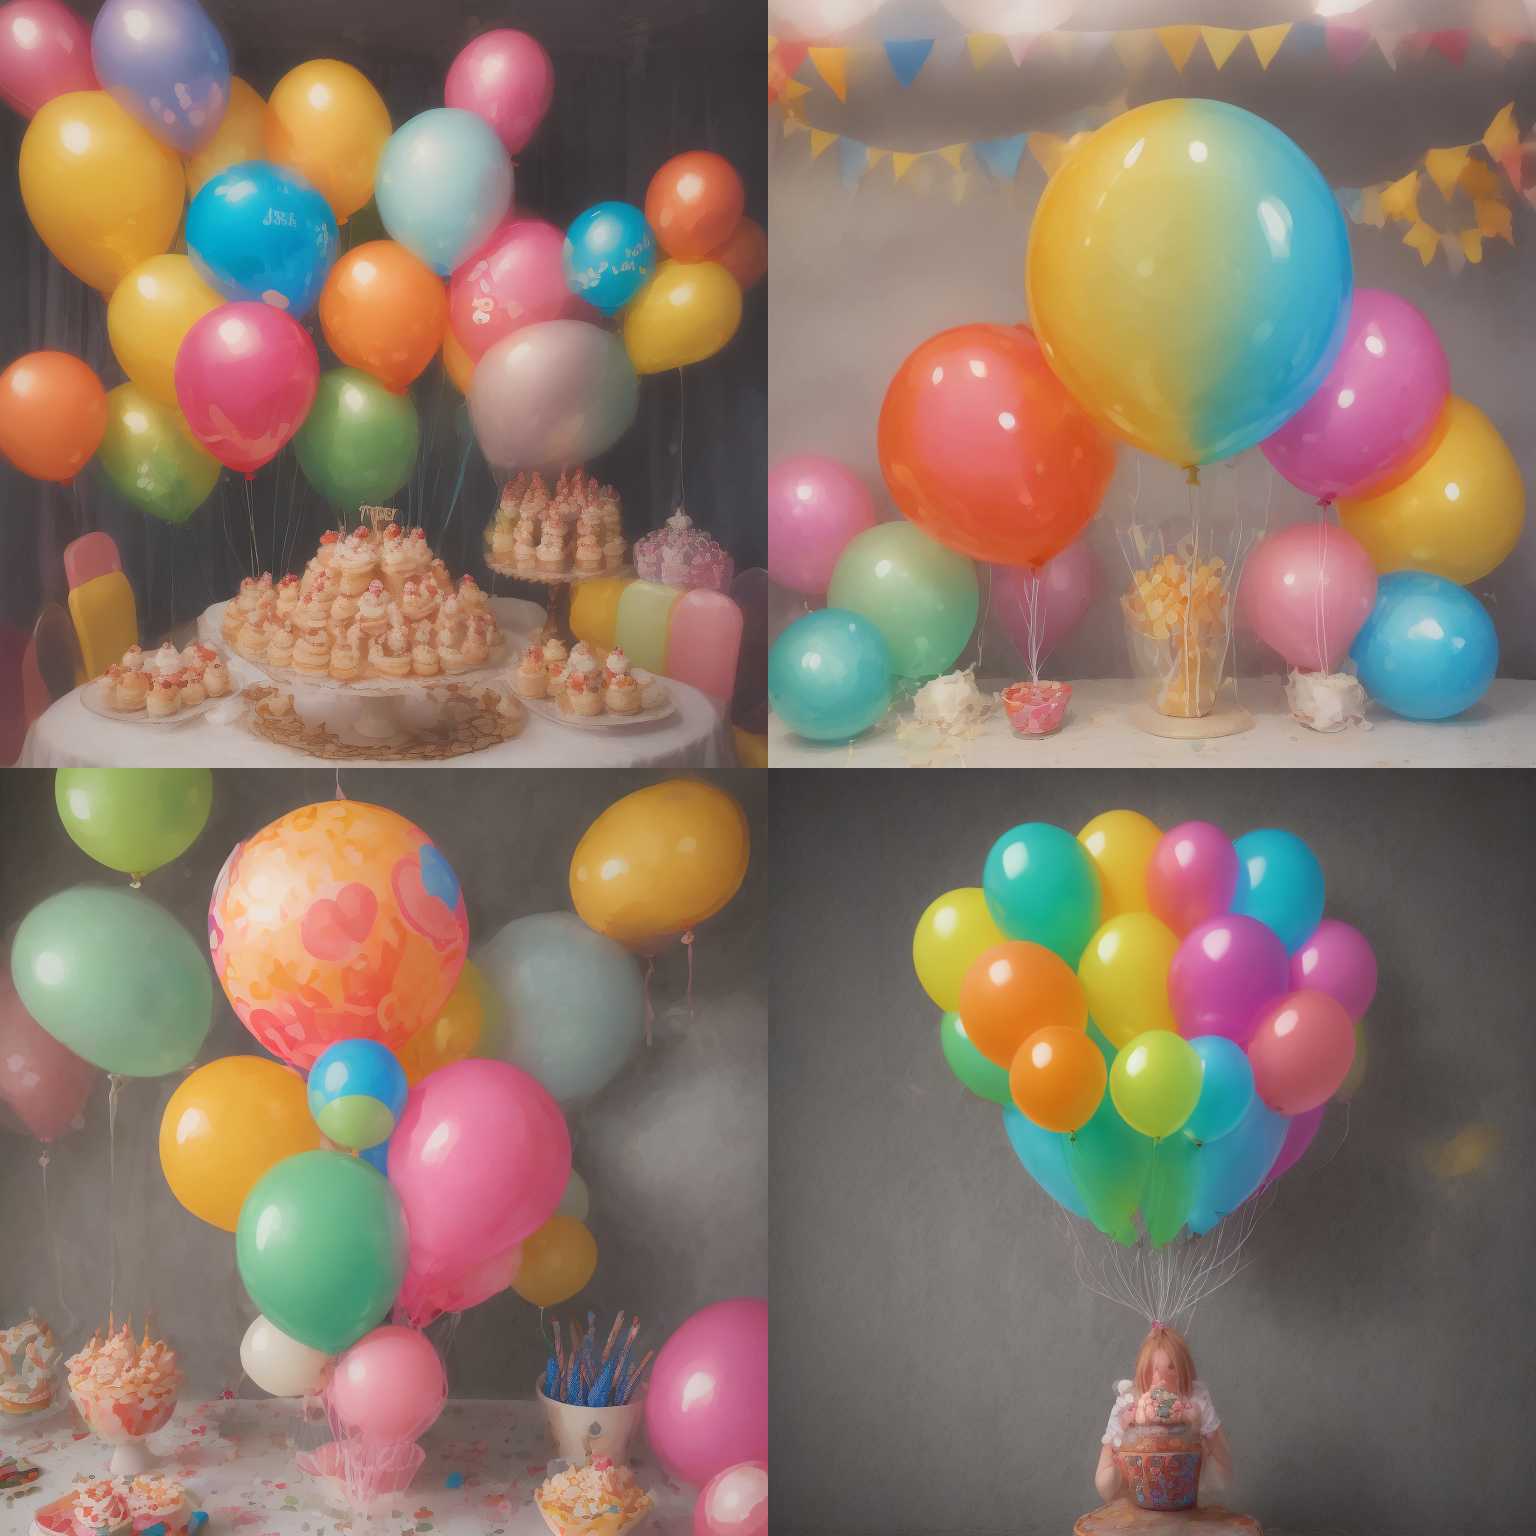 A party balloon